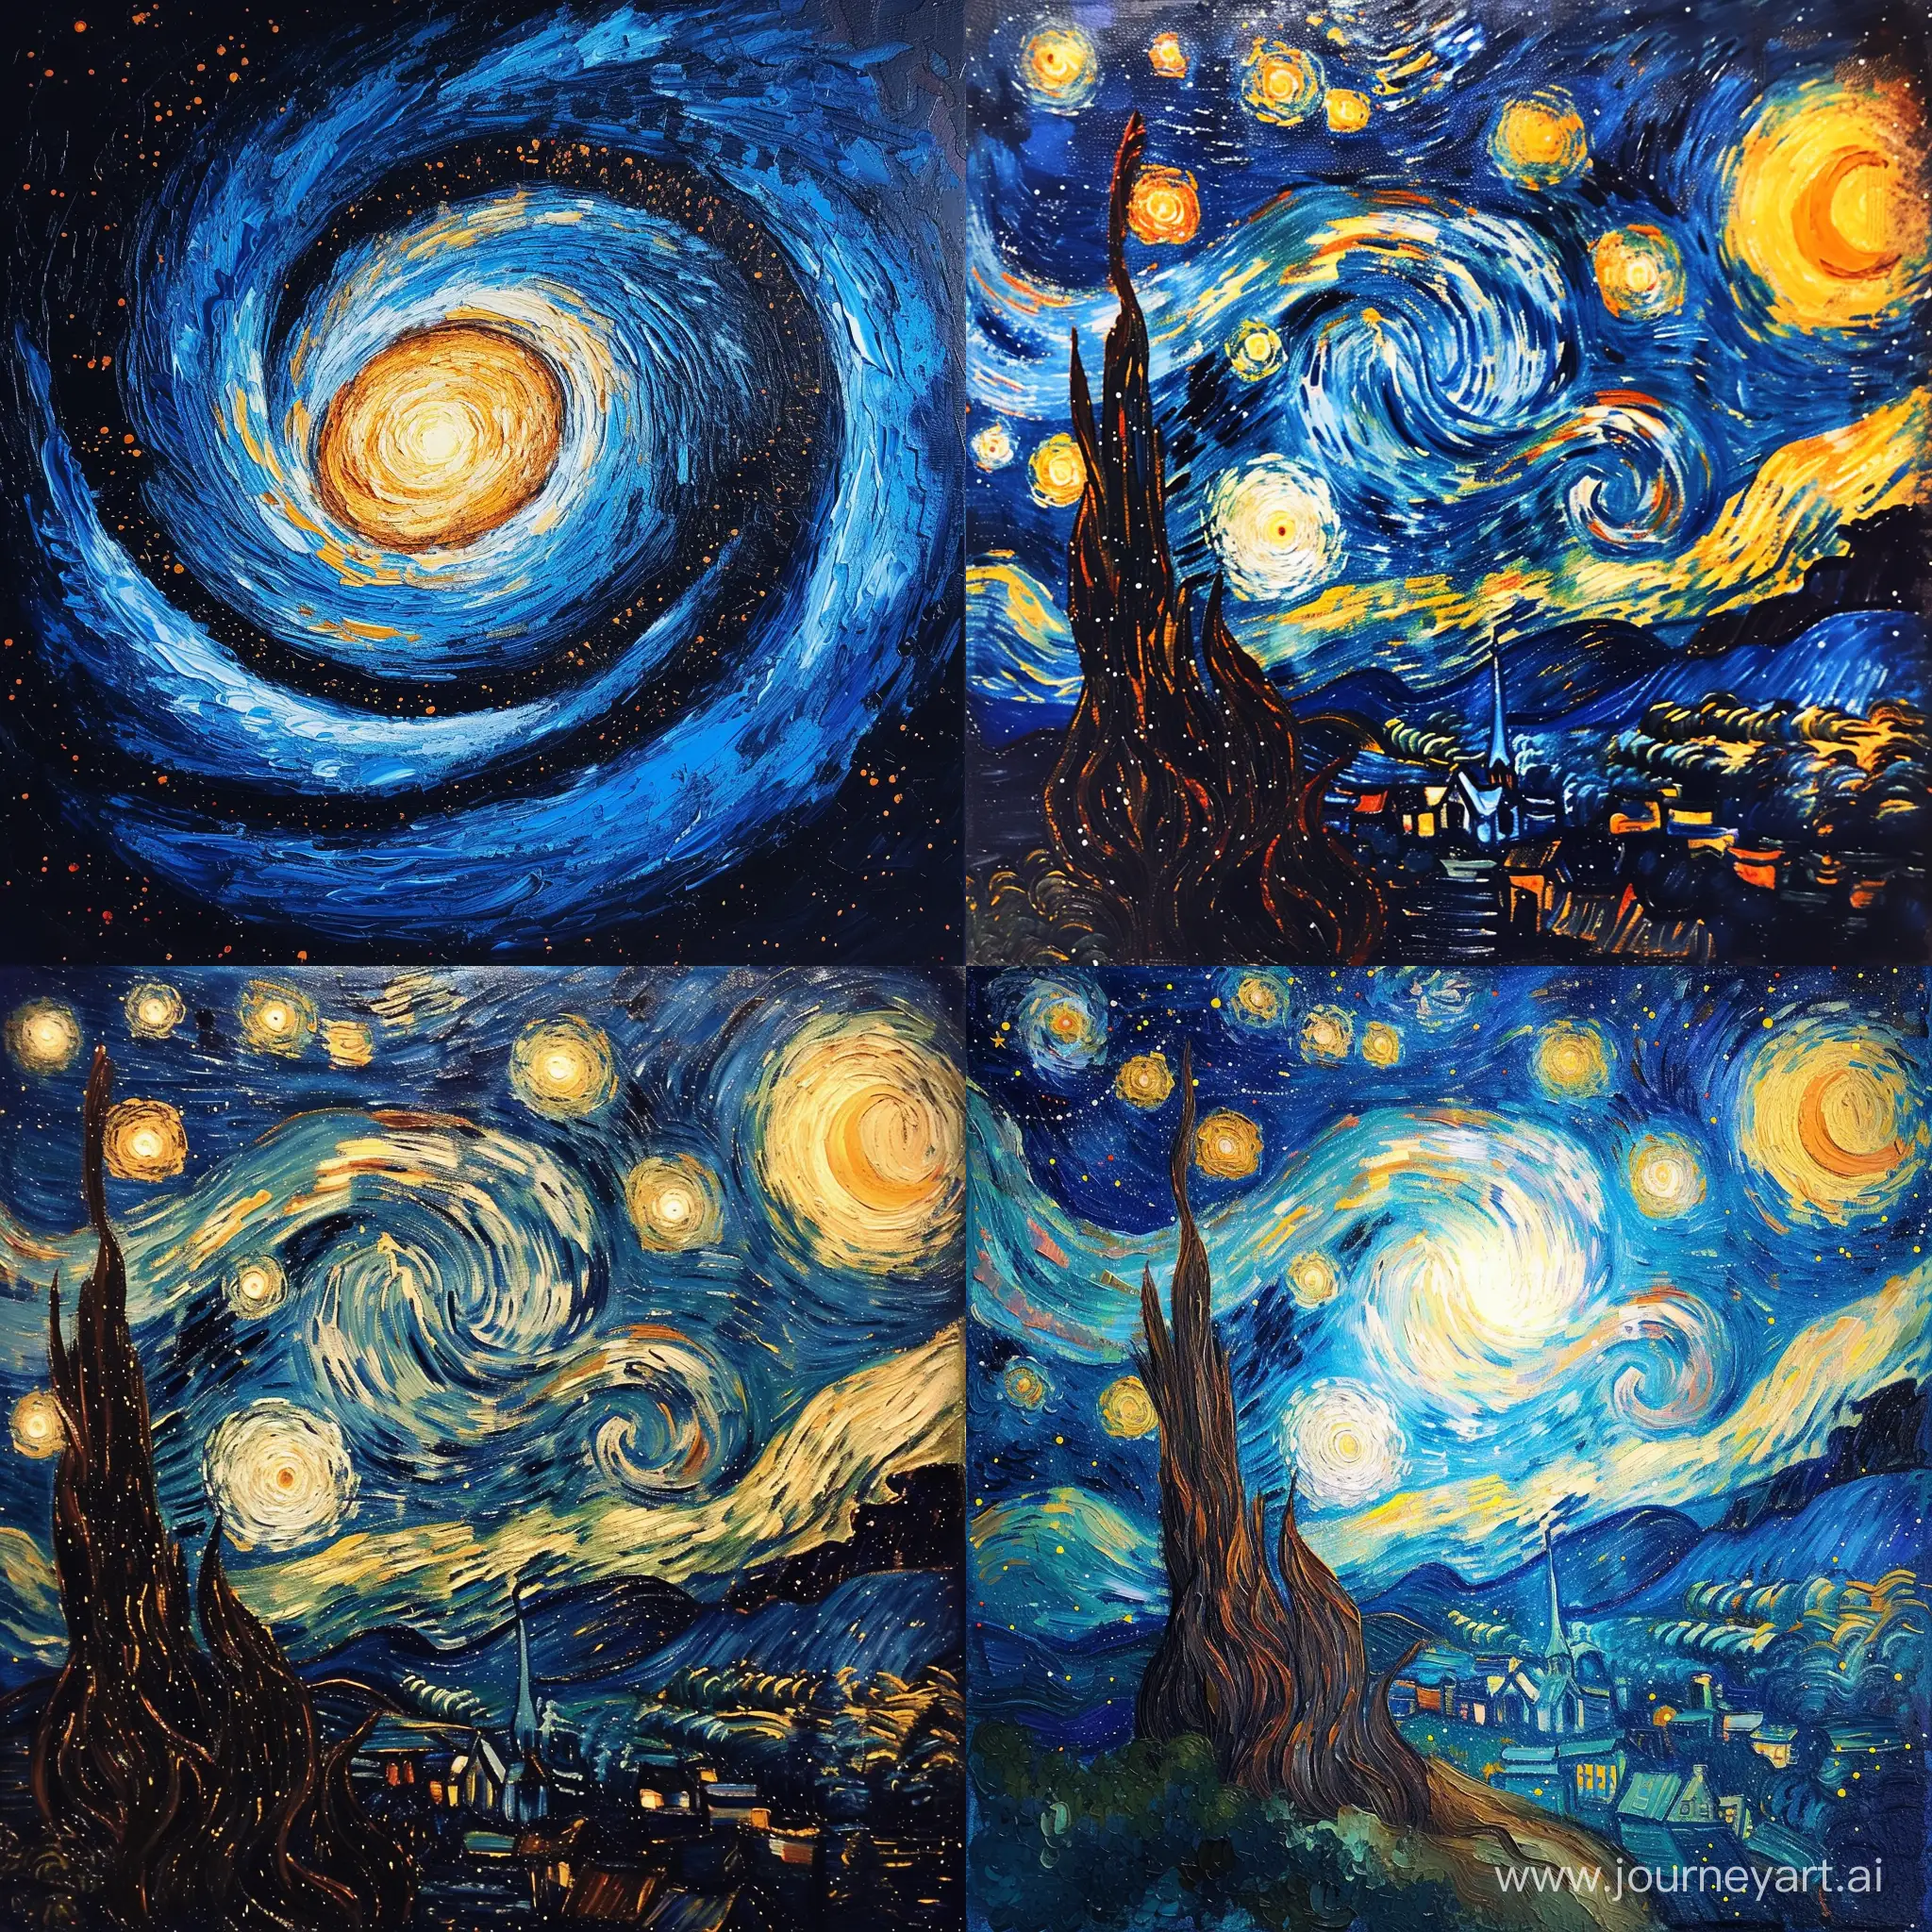 a galaxy in Van Gogh style